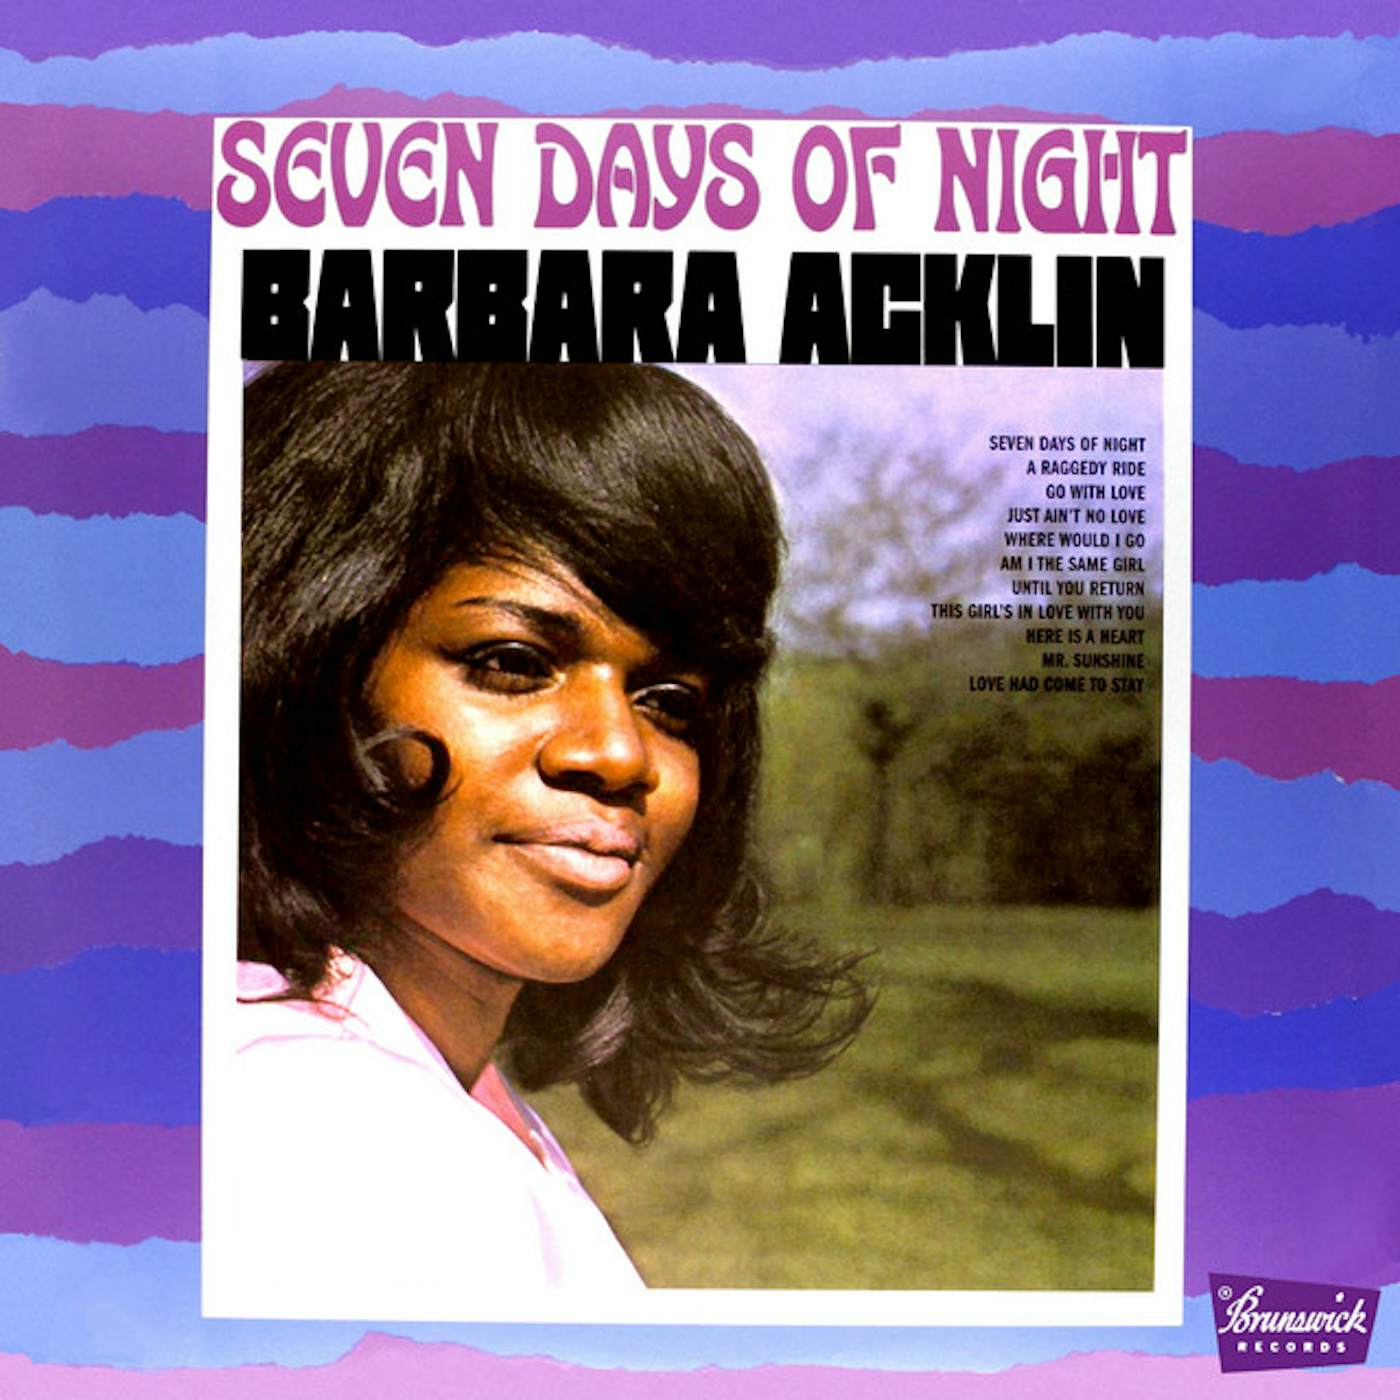 Barbara Acklin SEVEN DAYS OF NIGHT CD